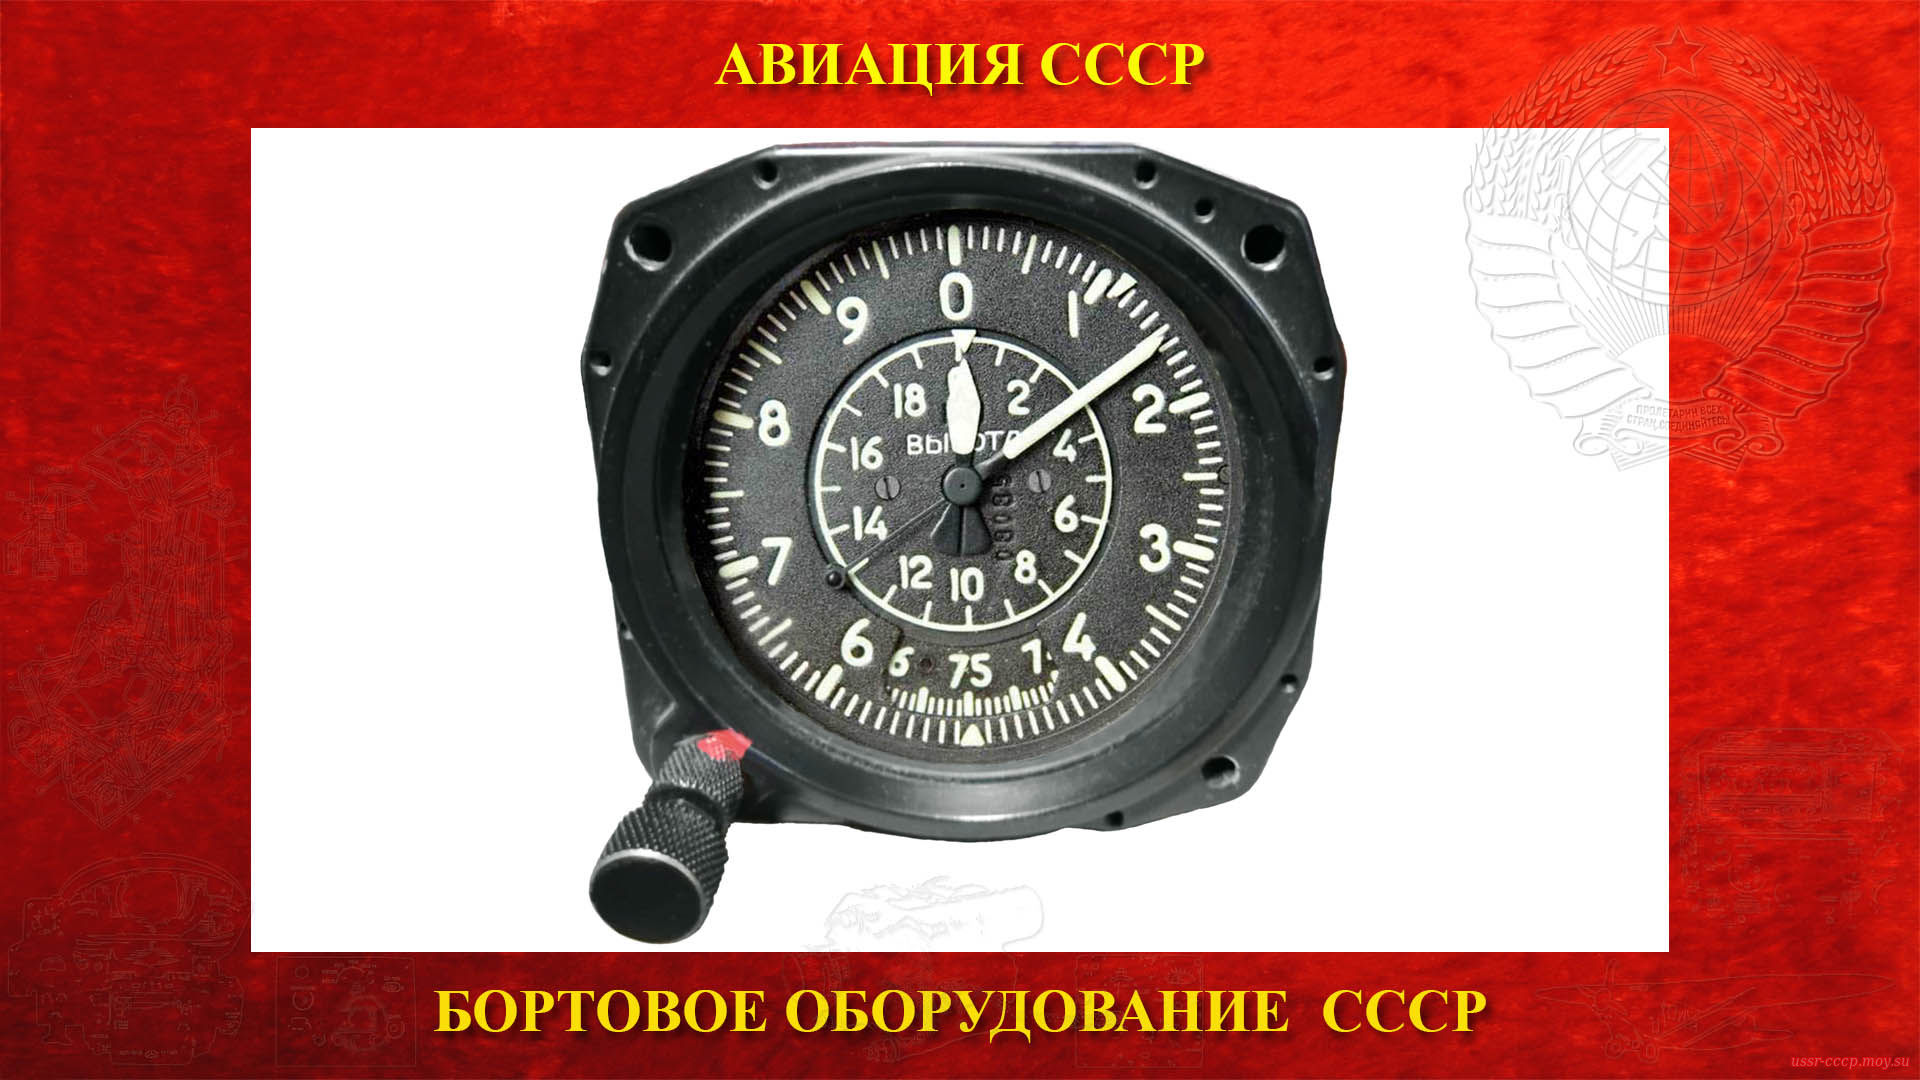 ВД-20 — Высотомер барометрический СССР (повествование)